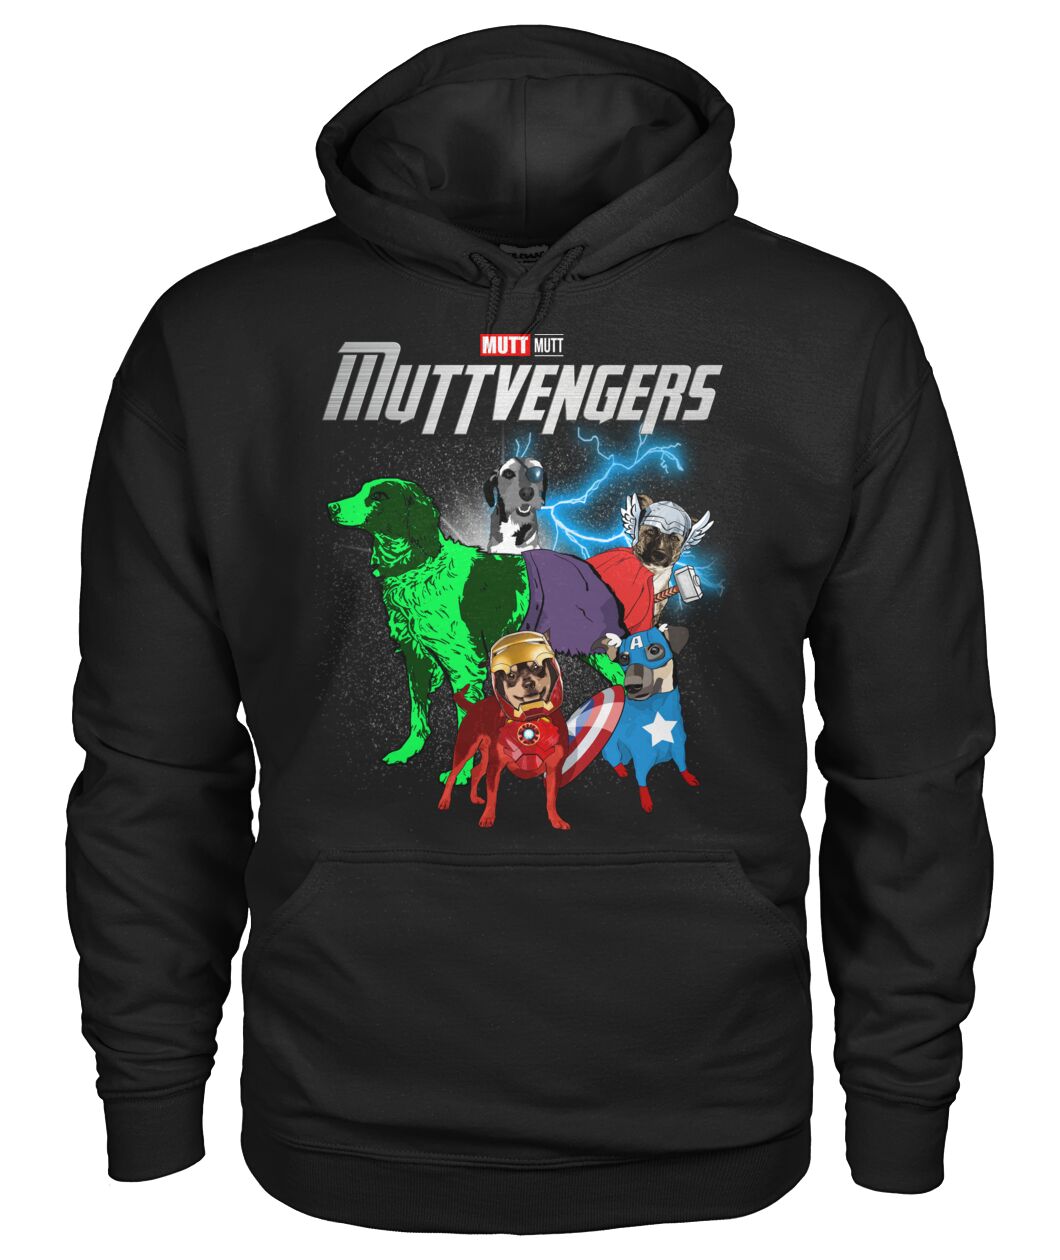 Muttvengers 3D Hoodie, Shirt 9